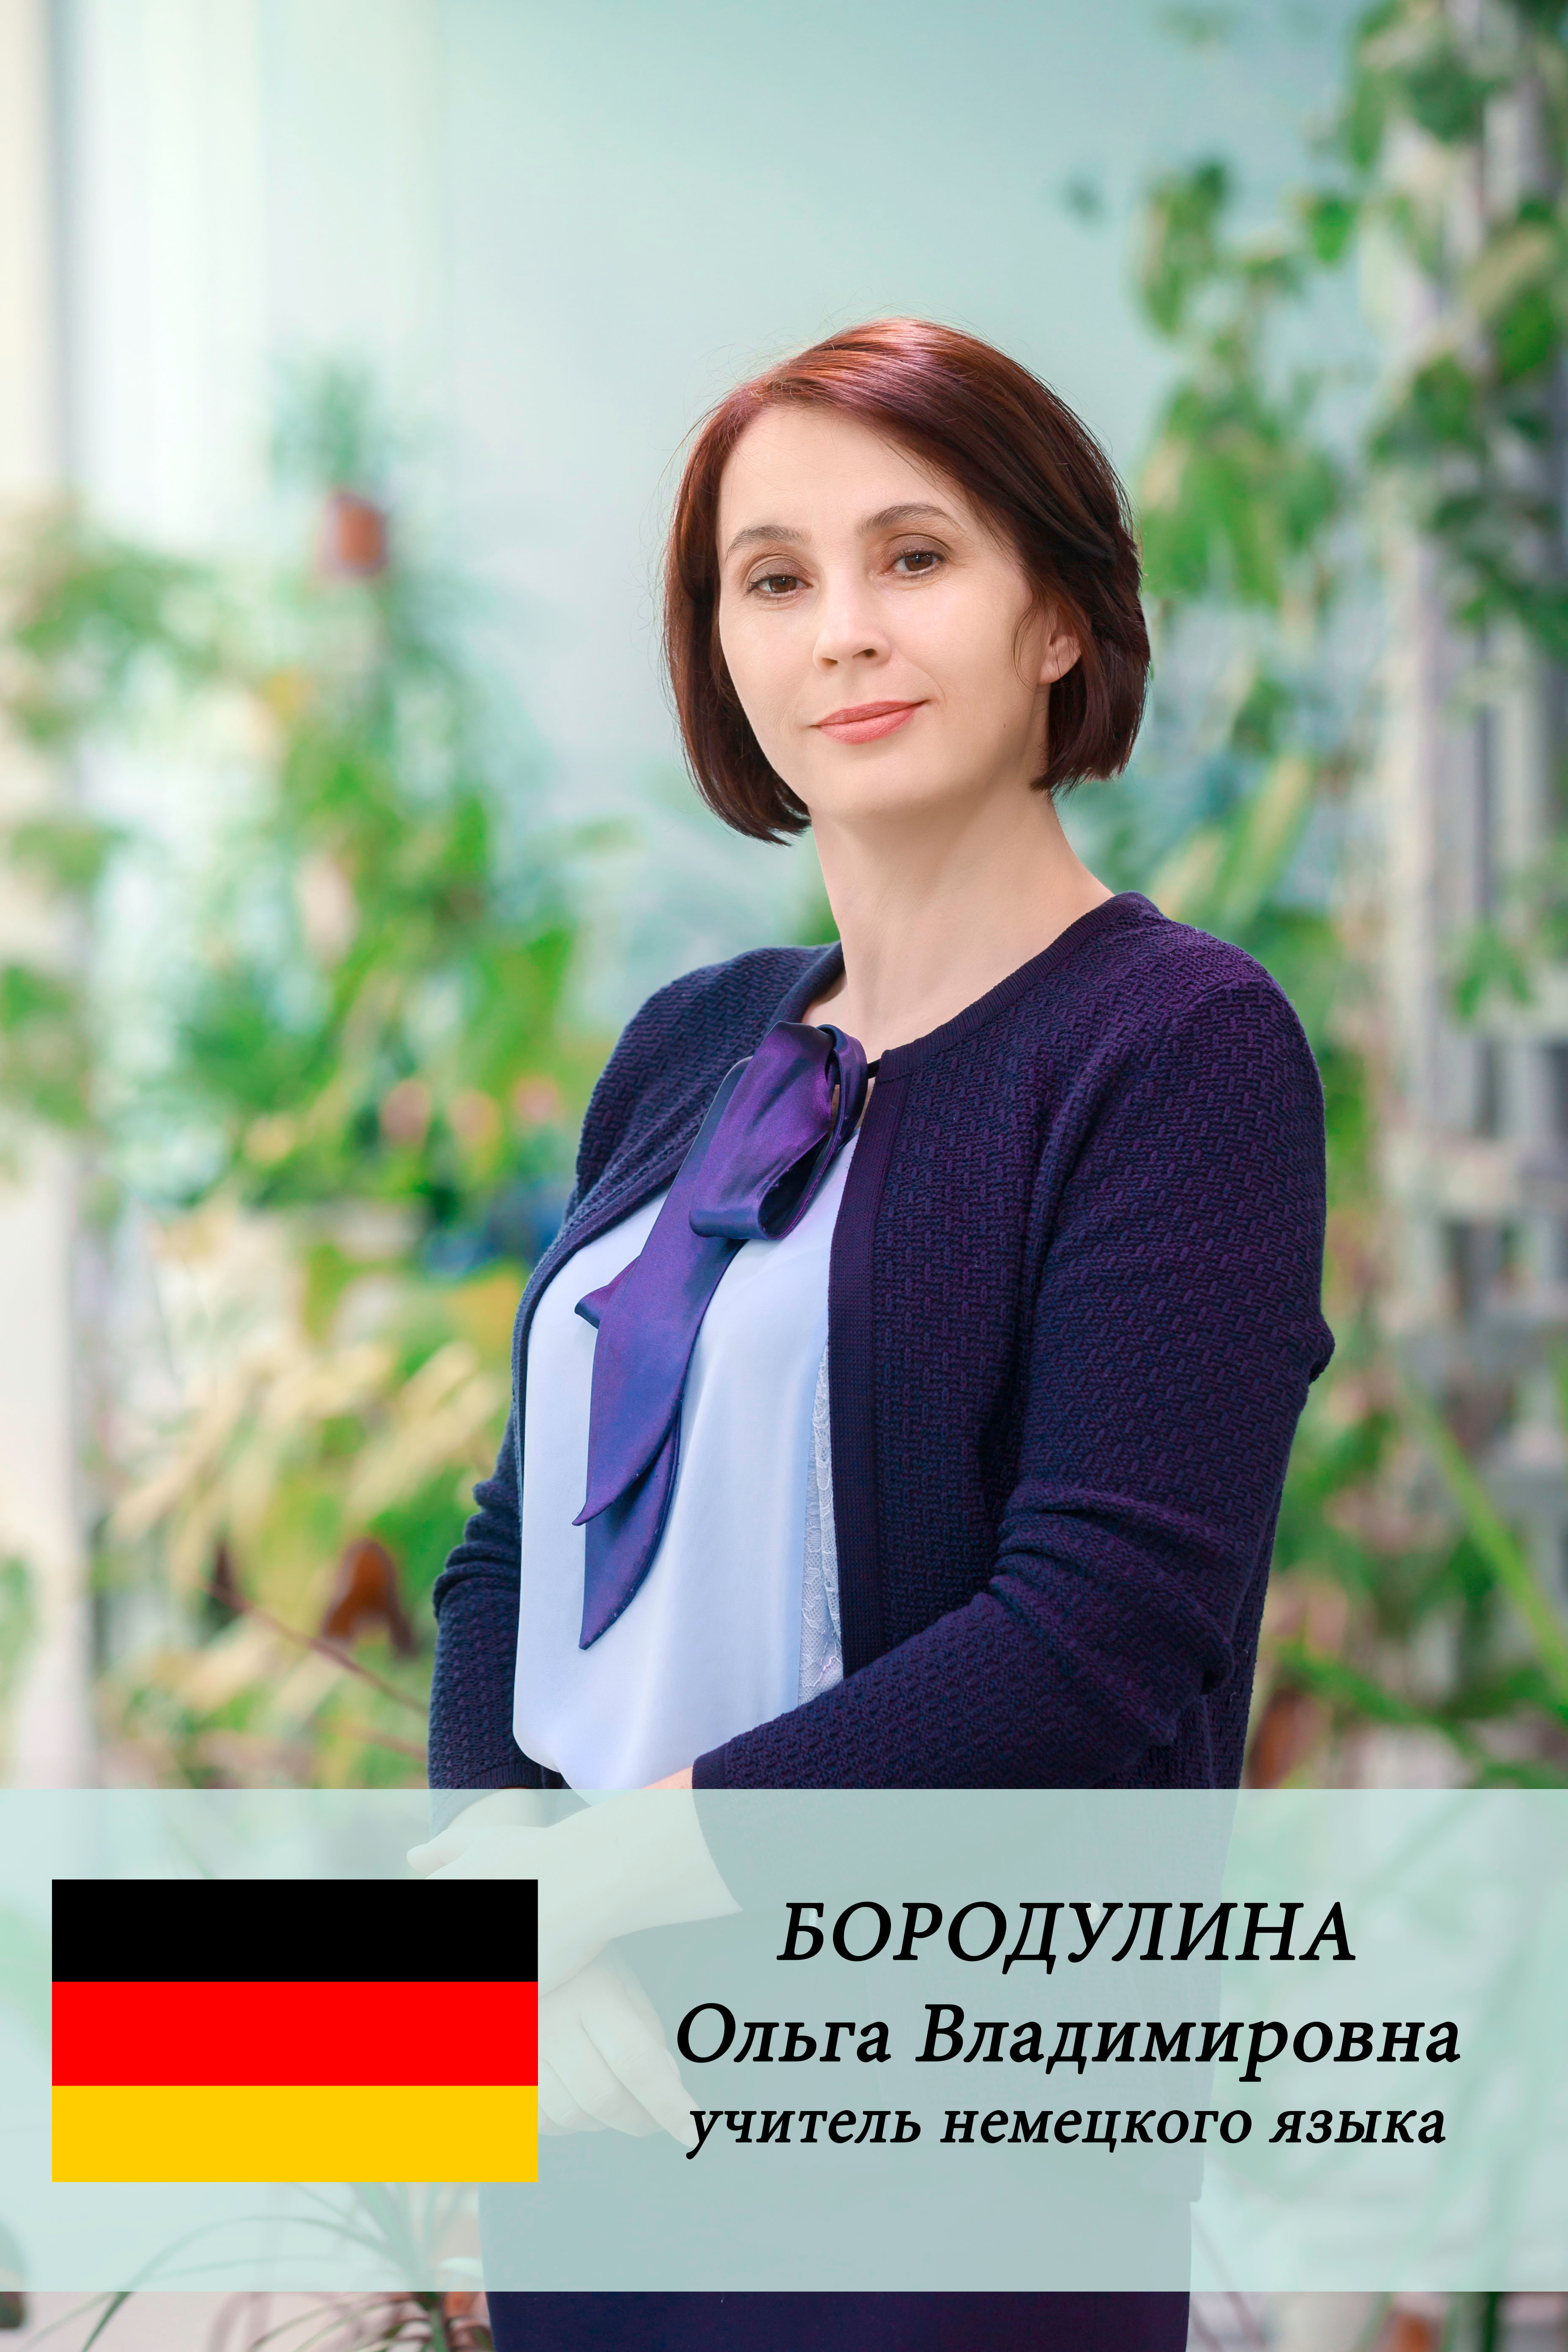 Бородулина Ольга Владимировна.